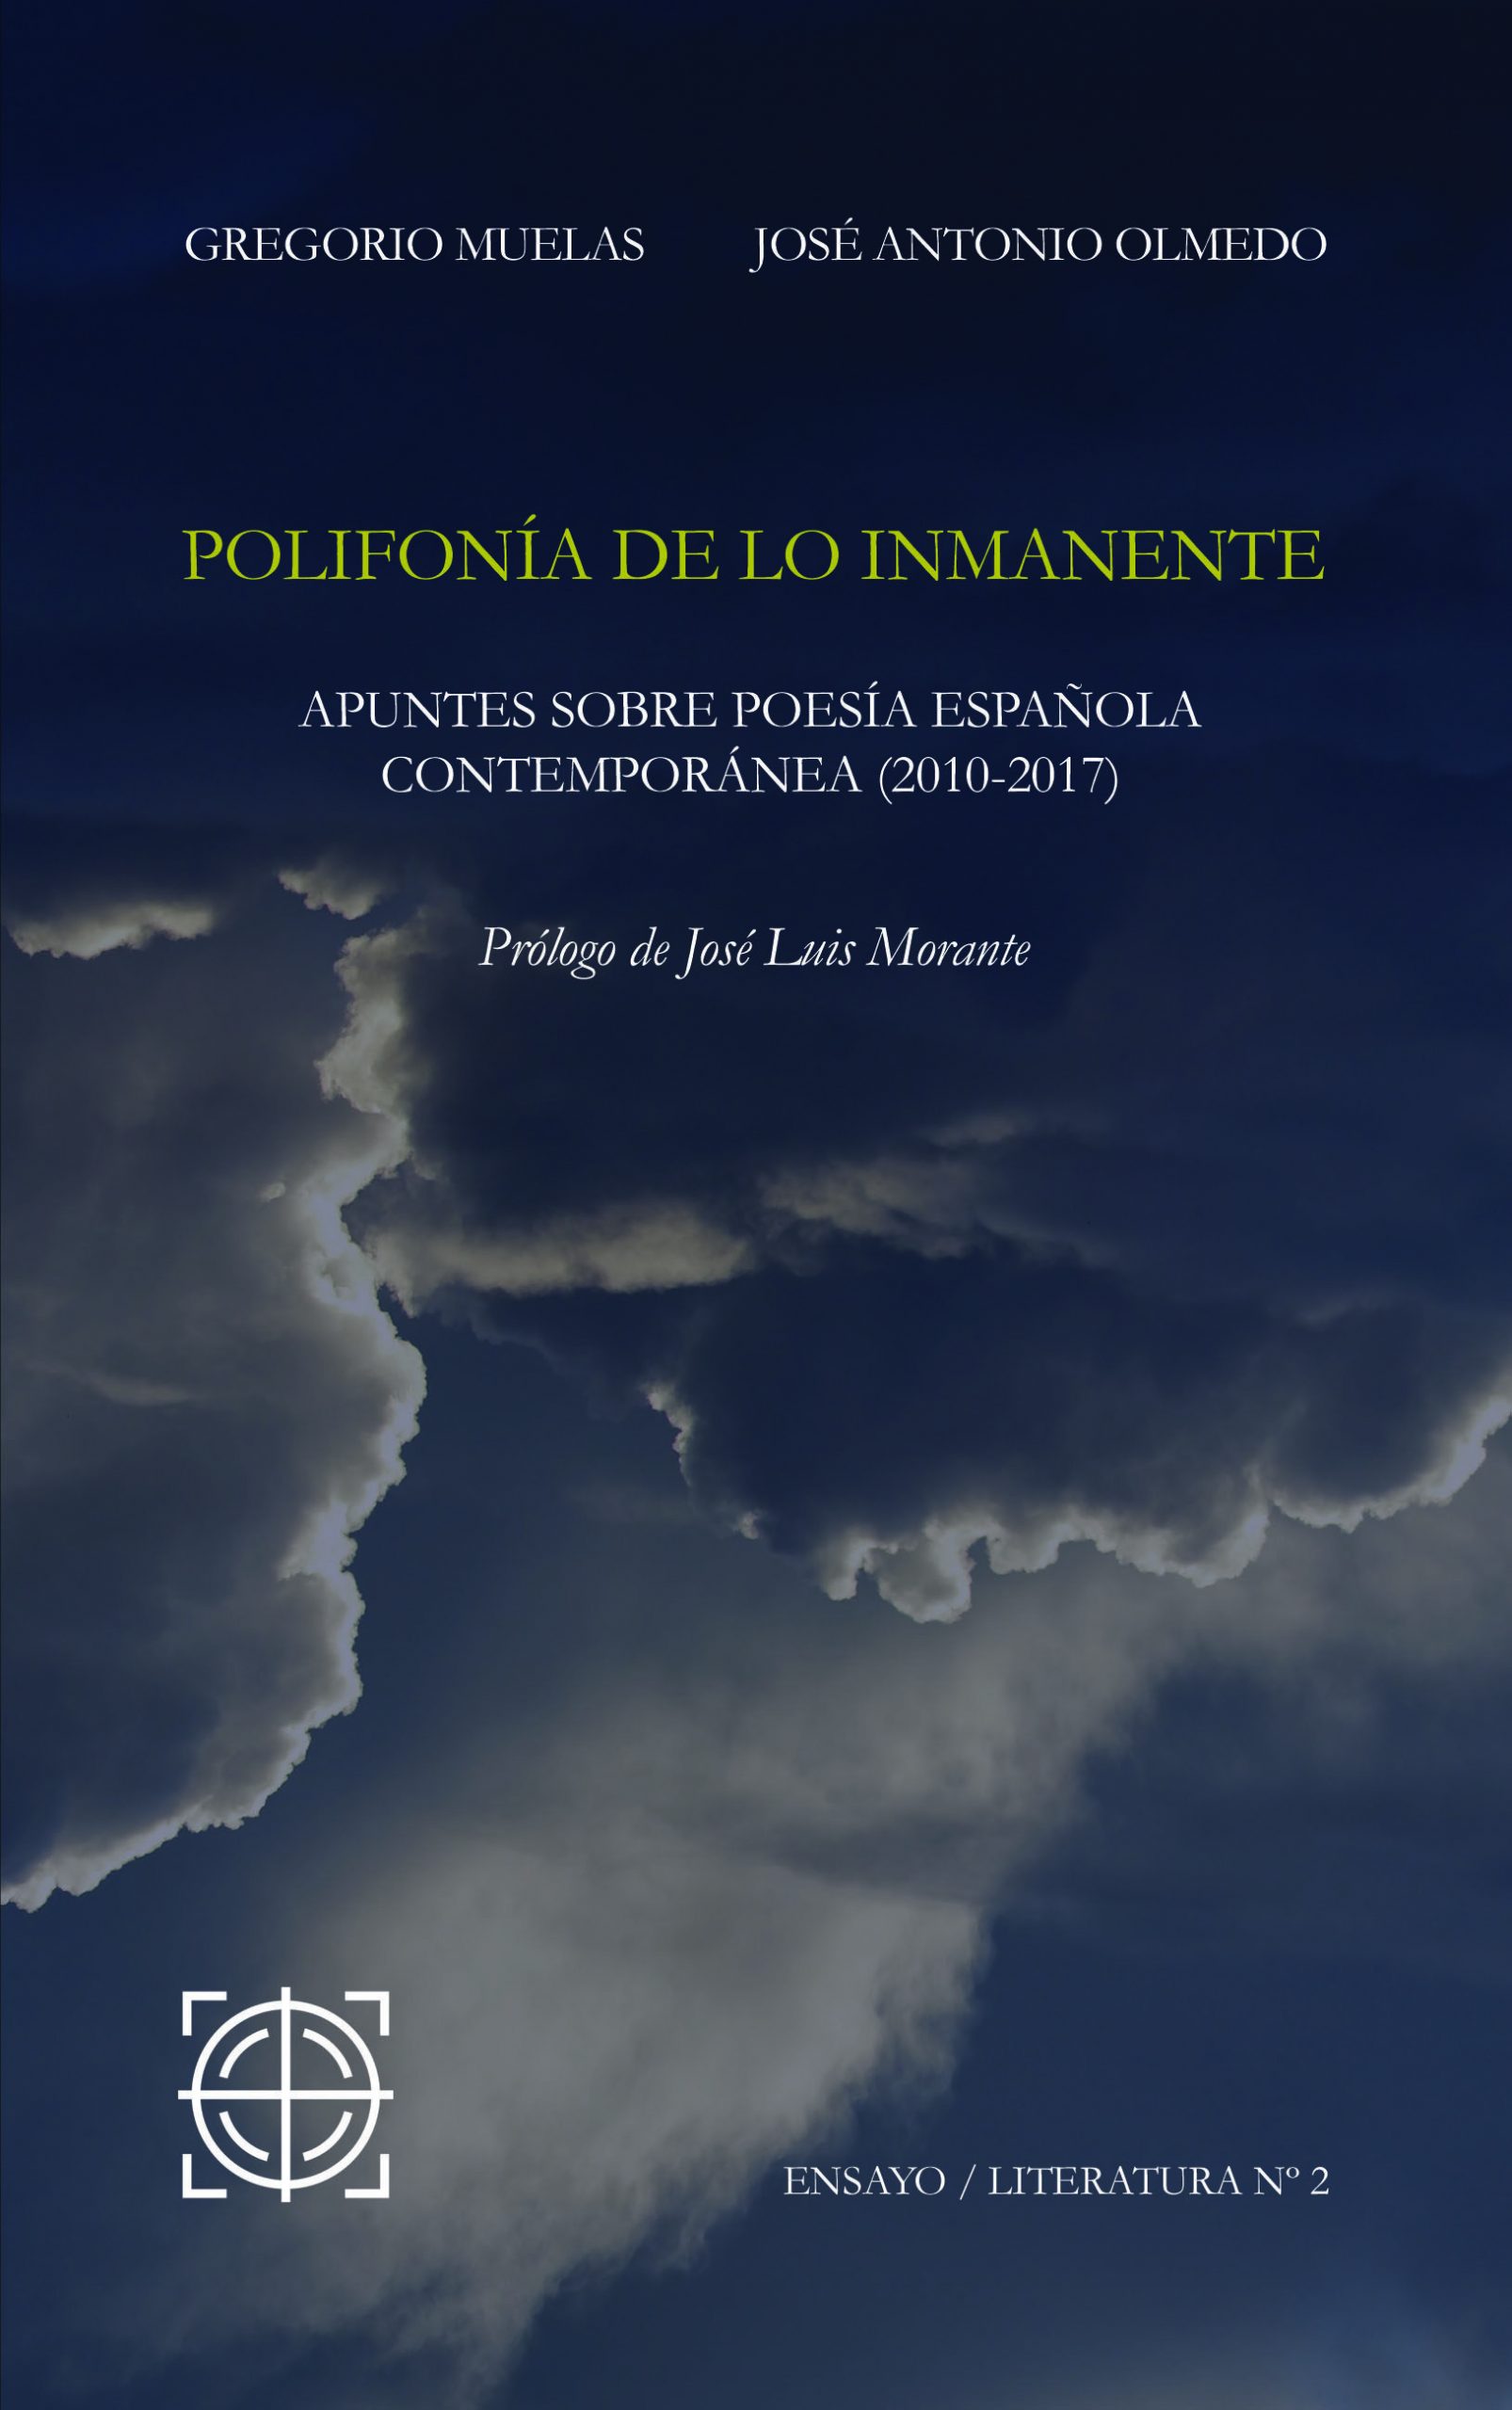 Imagen de portada del libro Polifonía de lo inmanente